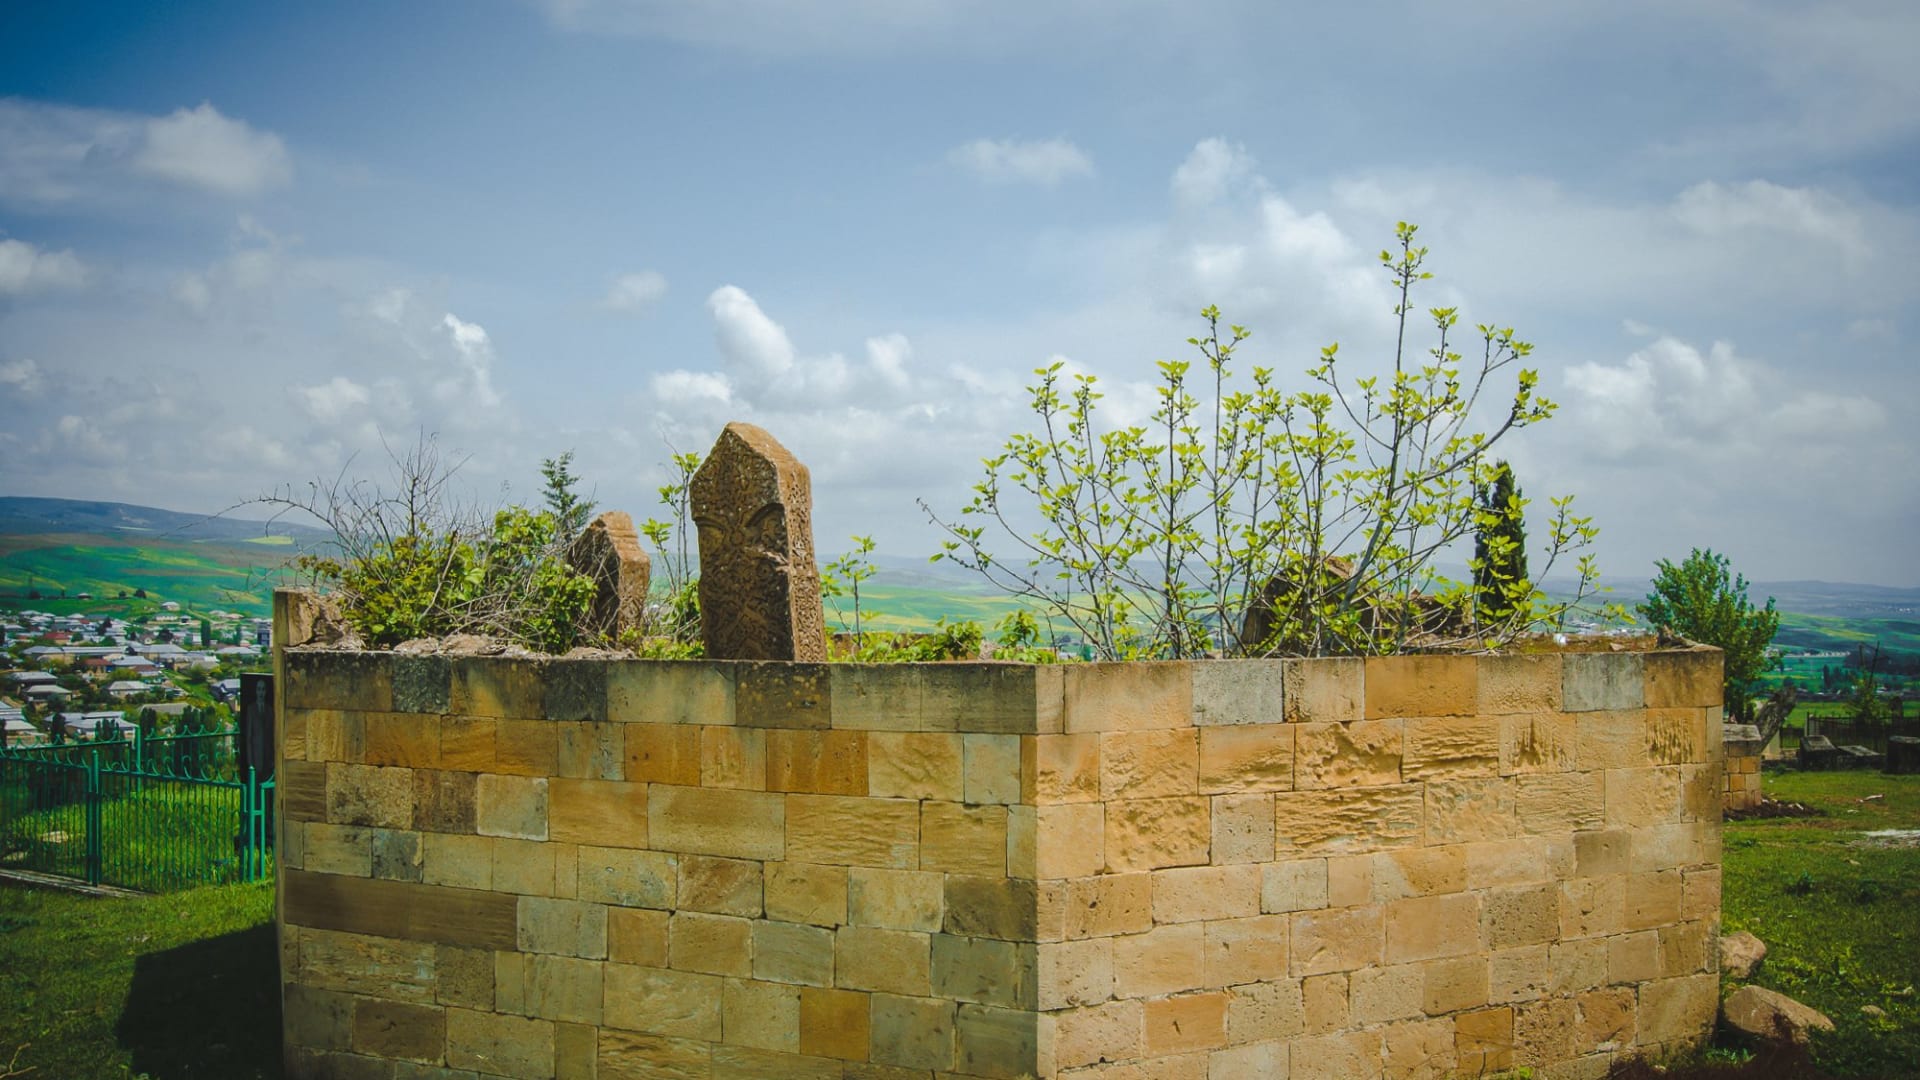   في أذربيجان، استكشف مقبرة القباب السبع.